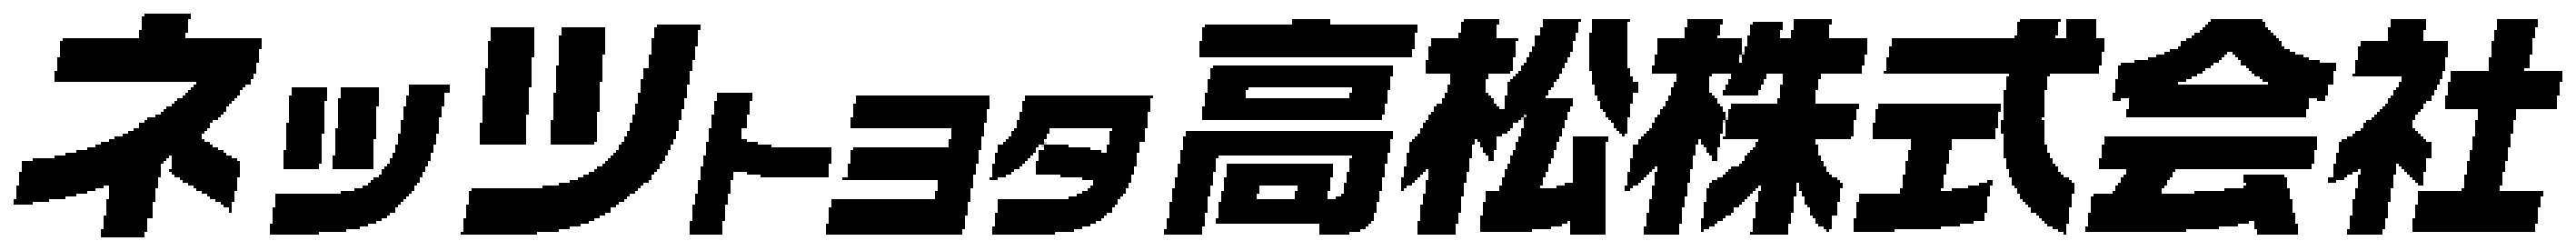 ネッツトヨタ高松株式会社 ロゴ画像